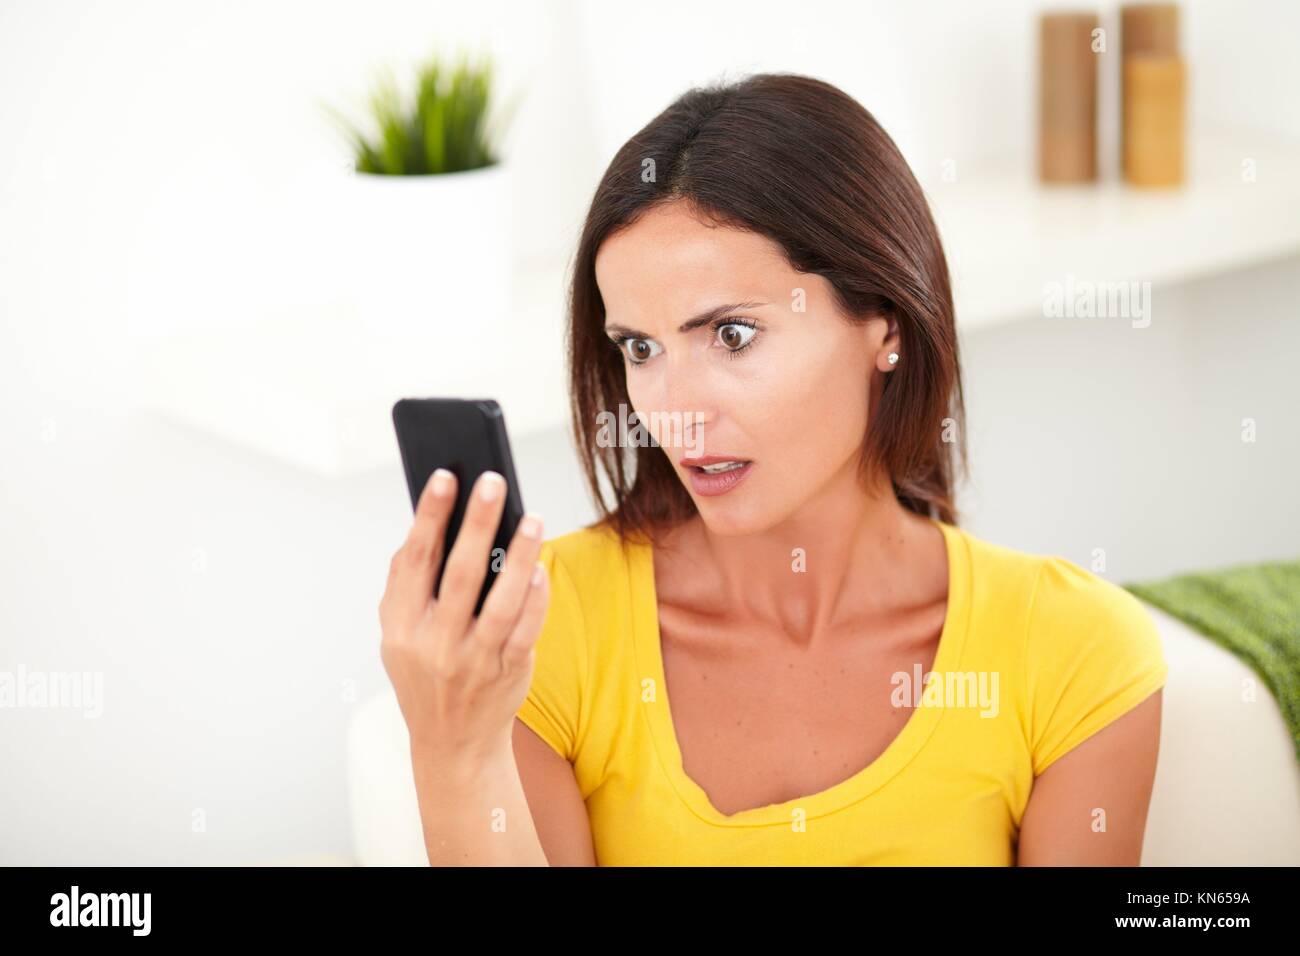 Kopf und Schultern Porträt einer Frau auf der Suche schockiert auf Ihrem Mobiltelefon - Fokus auf den Vordergrund. Stockfoto